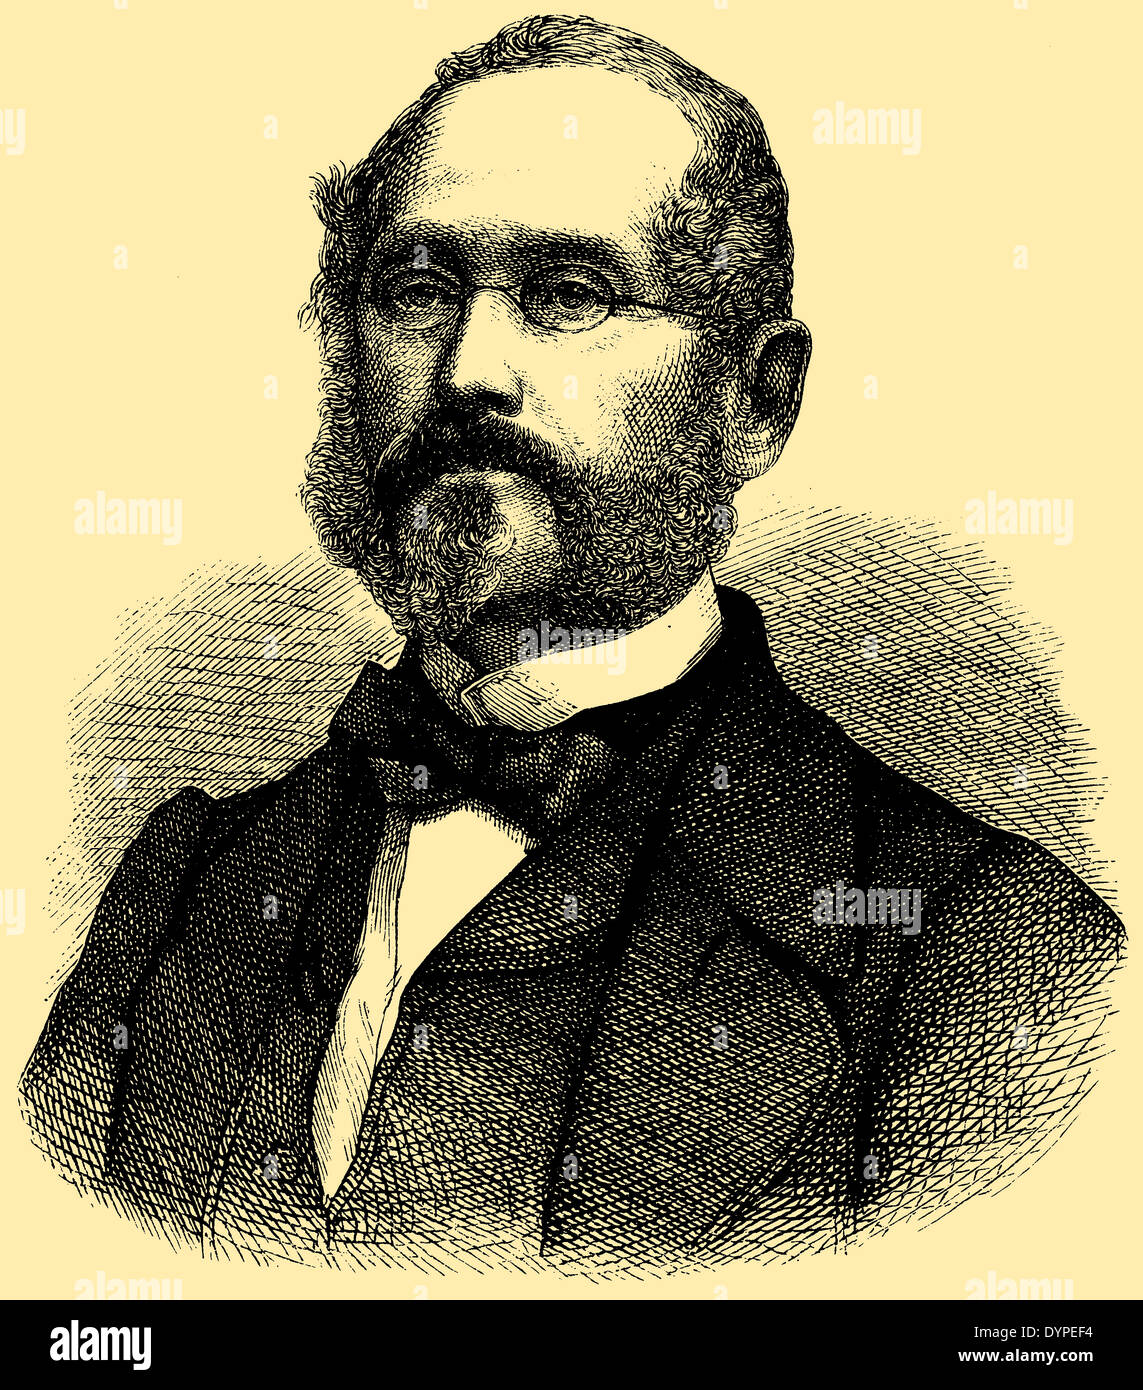 Franz Unger (born November 30, 1800, died February 13, 1870) Stock - franz-unger-born-november-30-1800-died-february-13-1870-DYPEF4